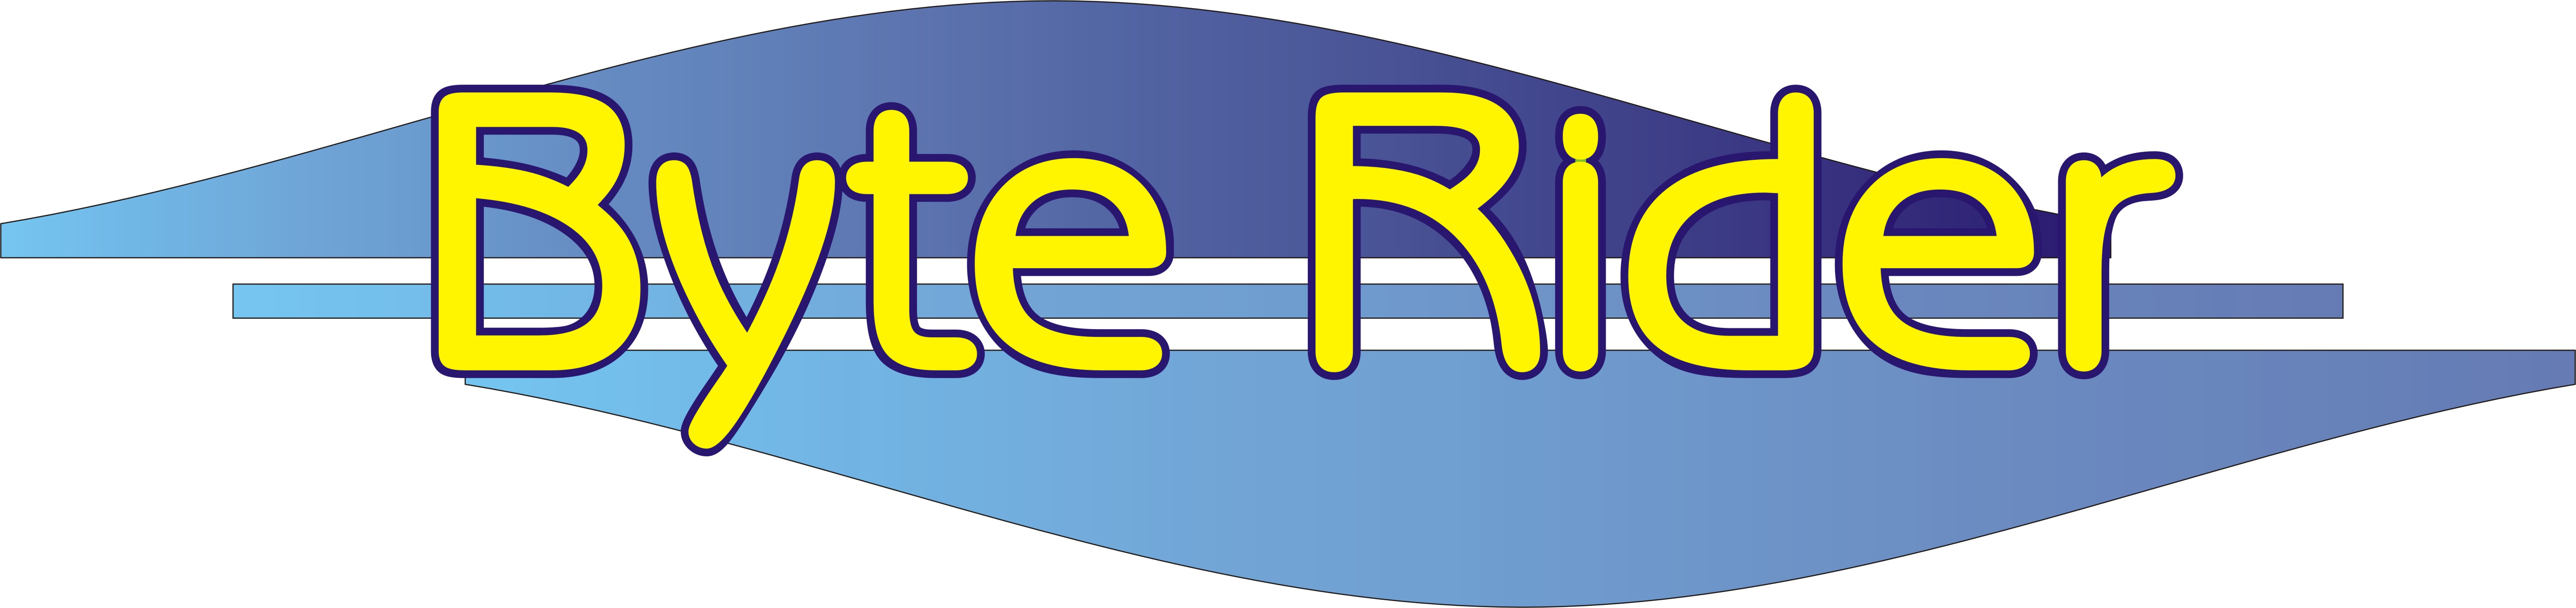 BYTE RIDER Szolgáltató és Kereskedelmi Betéti Társaság